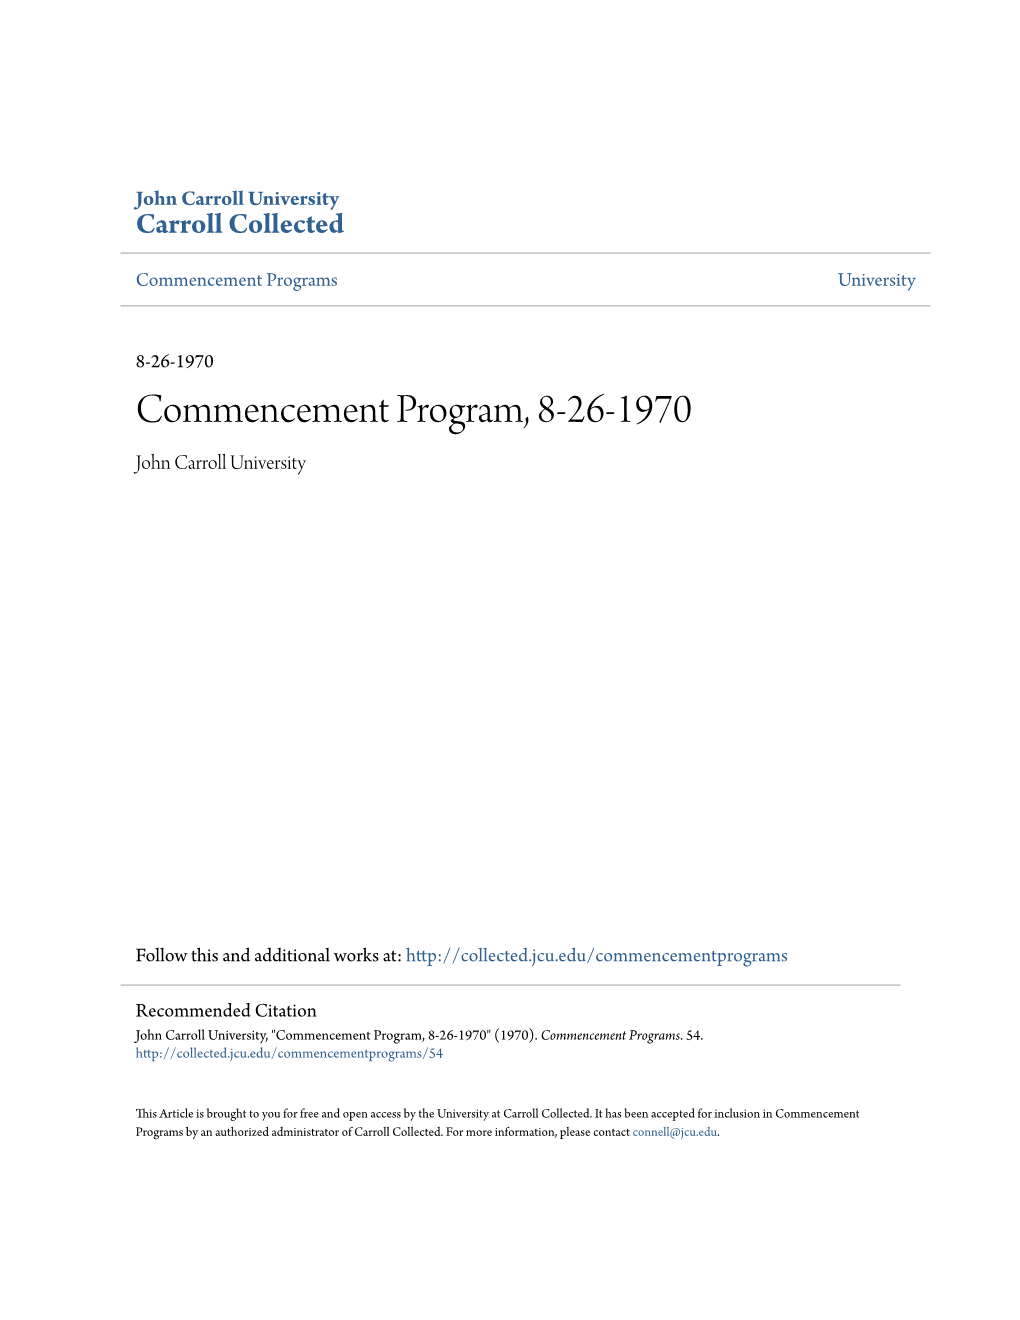 Commencement Program, 8-26-1970 John Carroll University